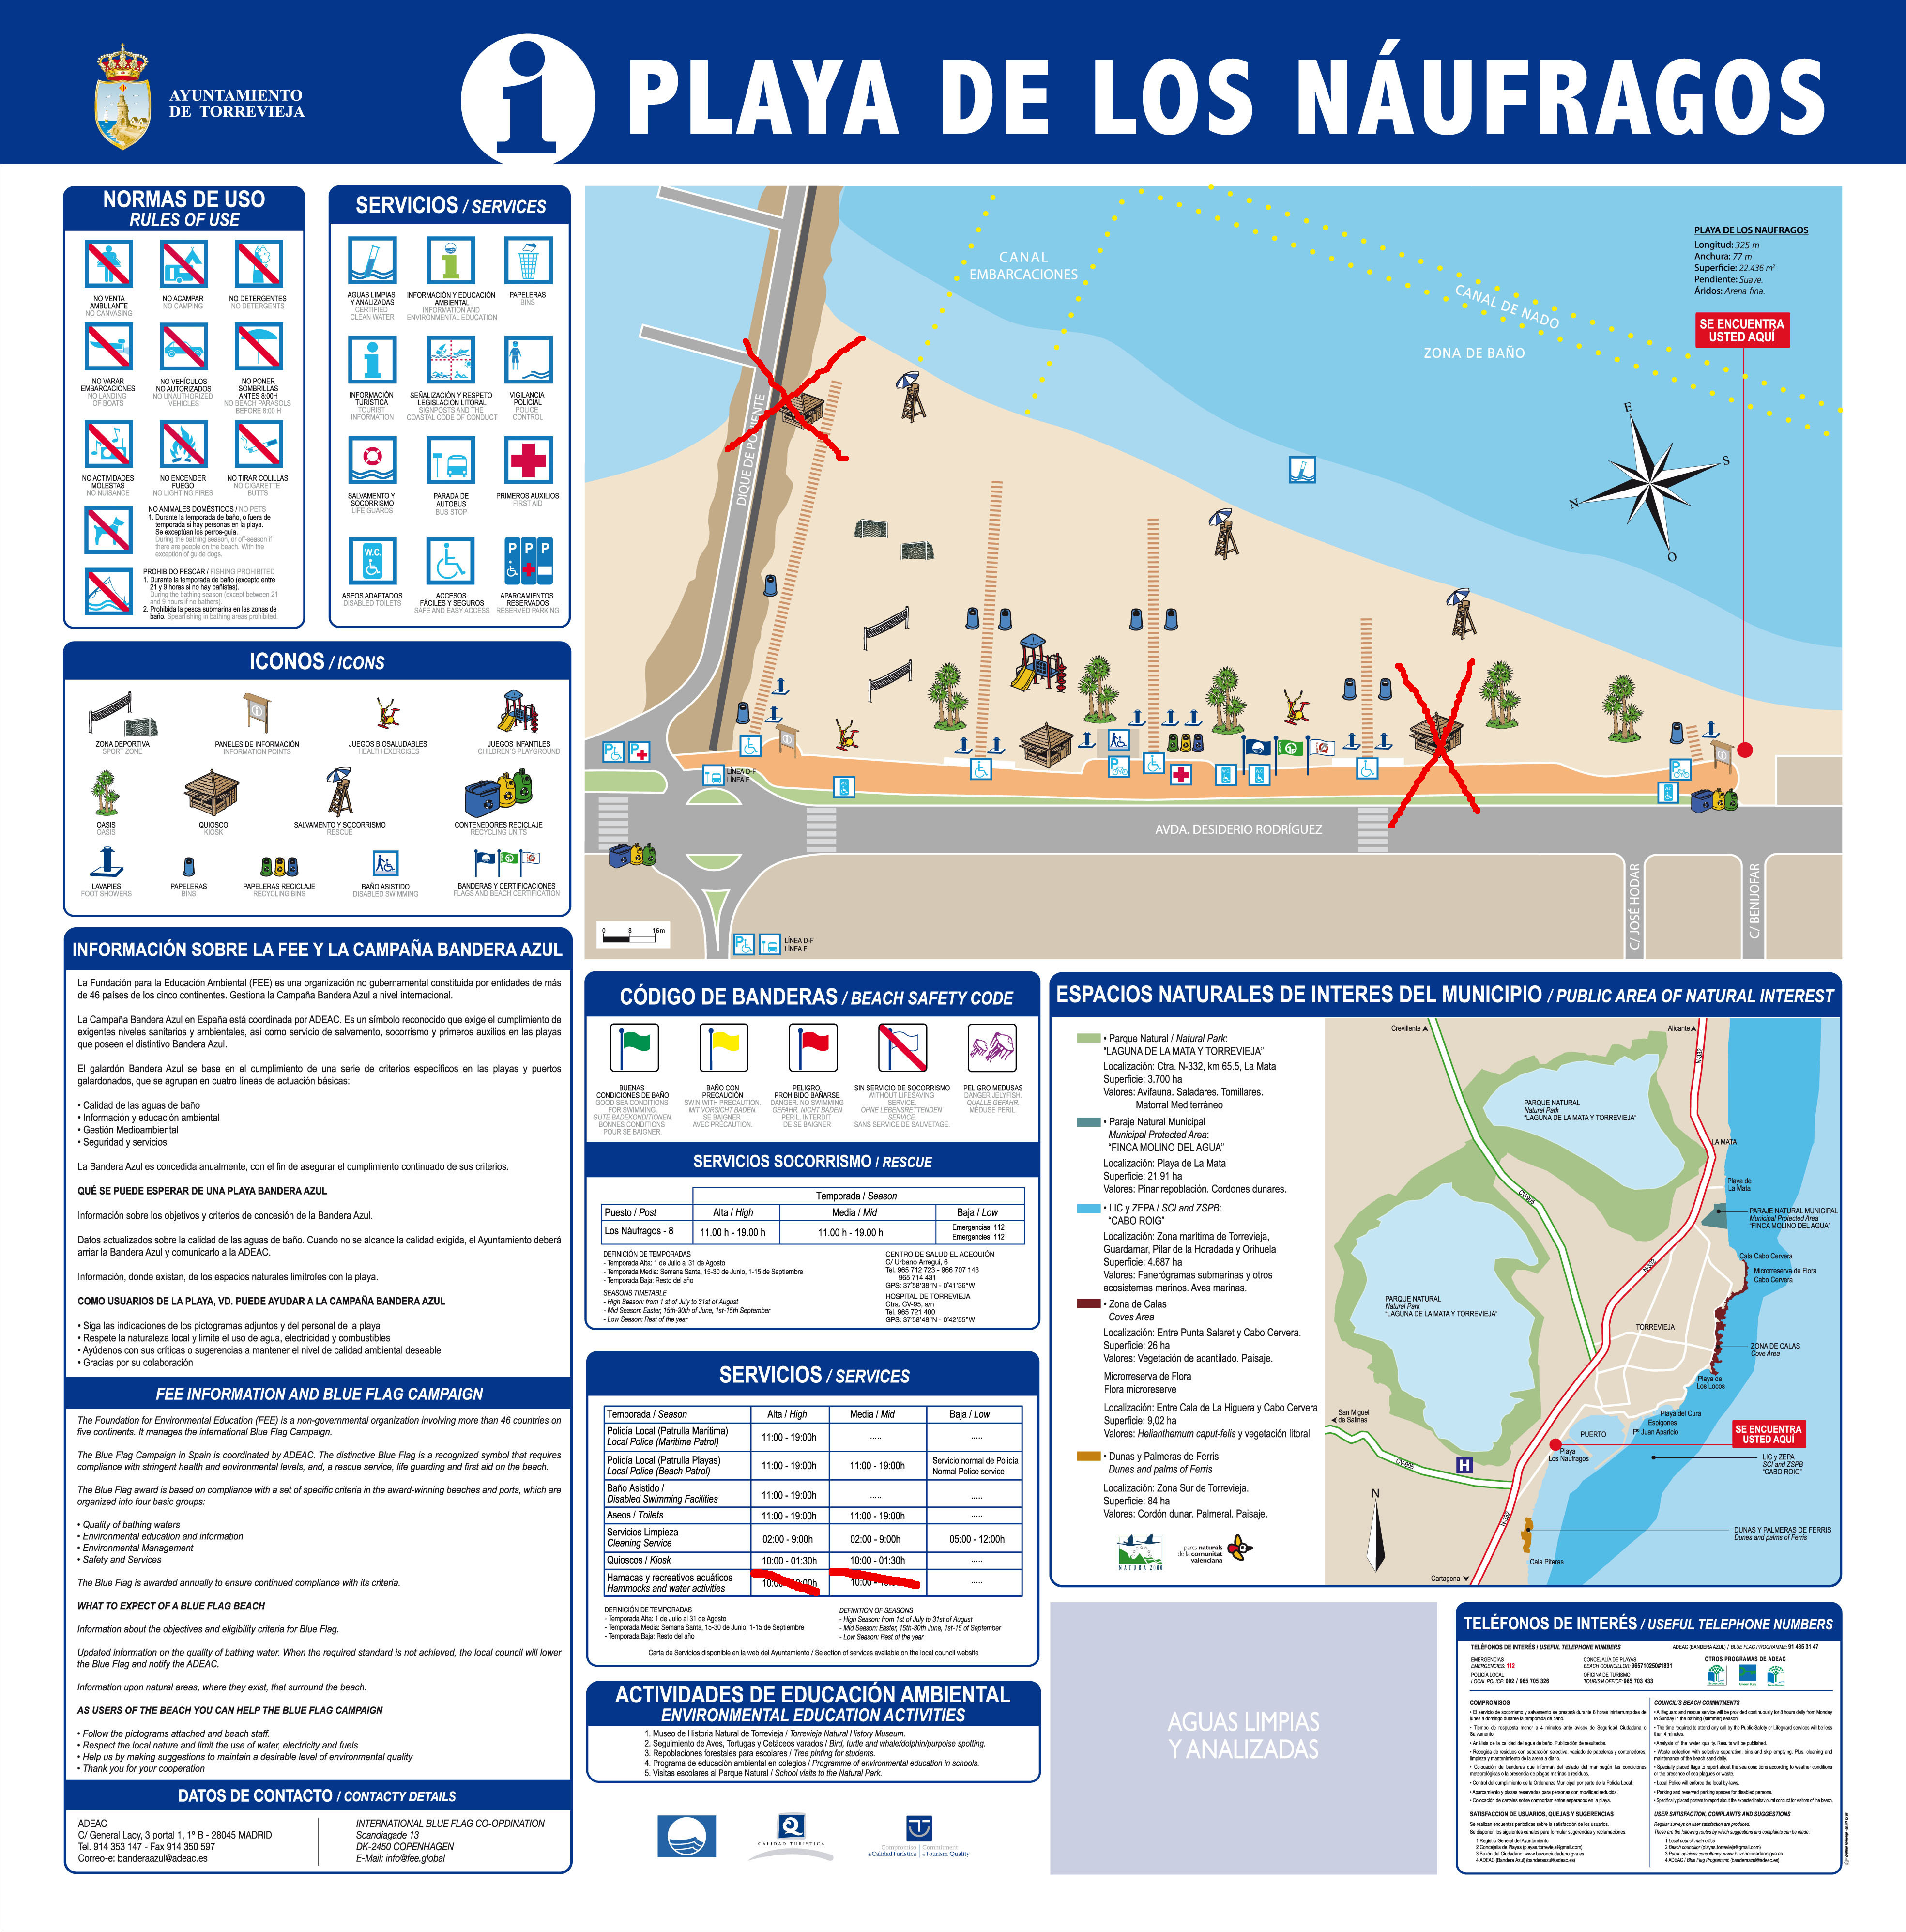 Los Náufragos beach